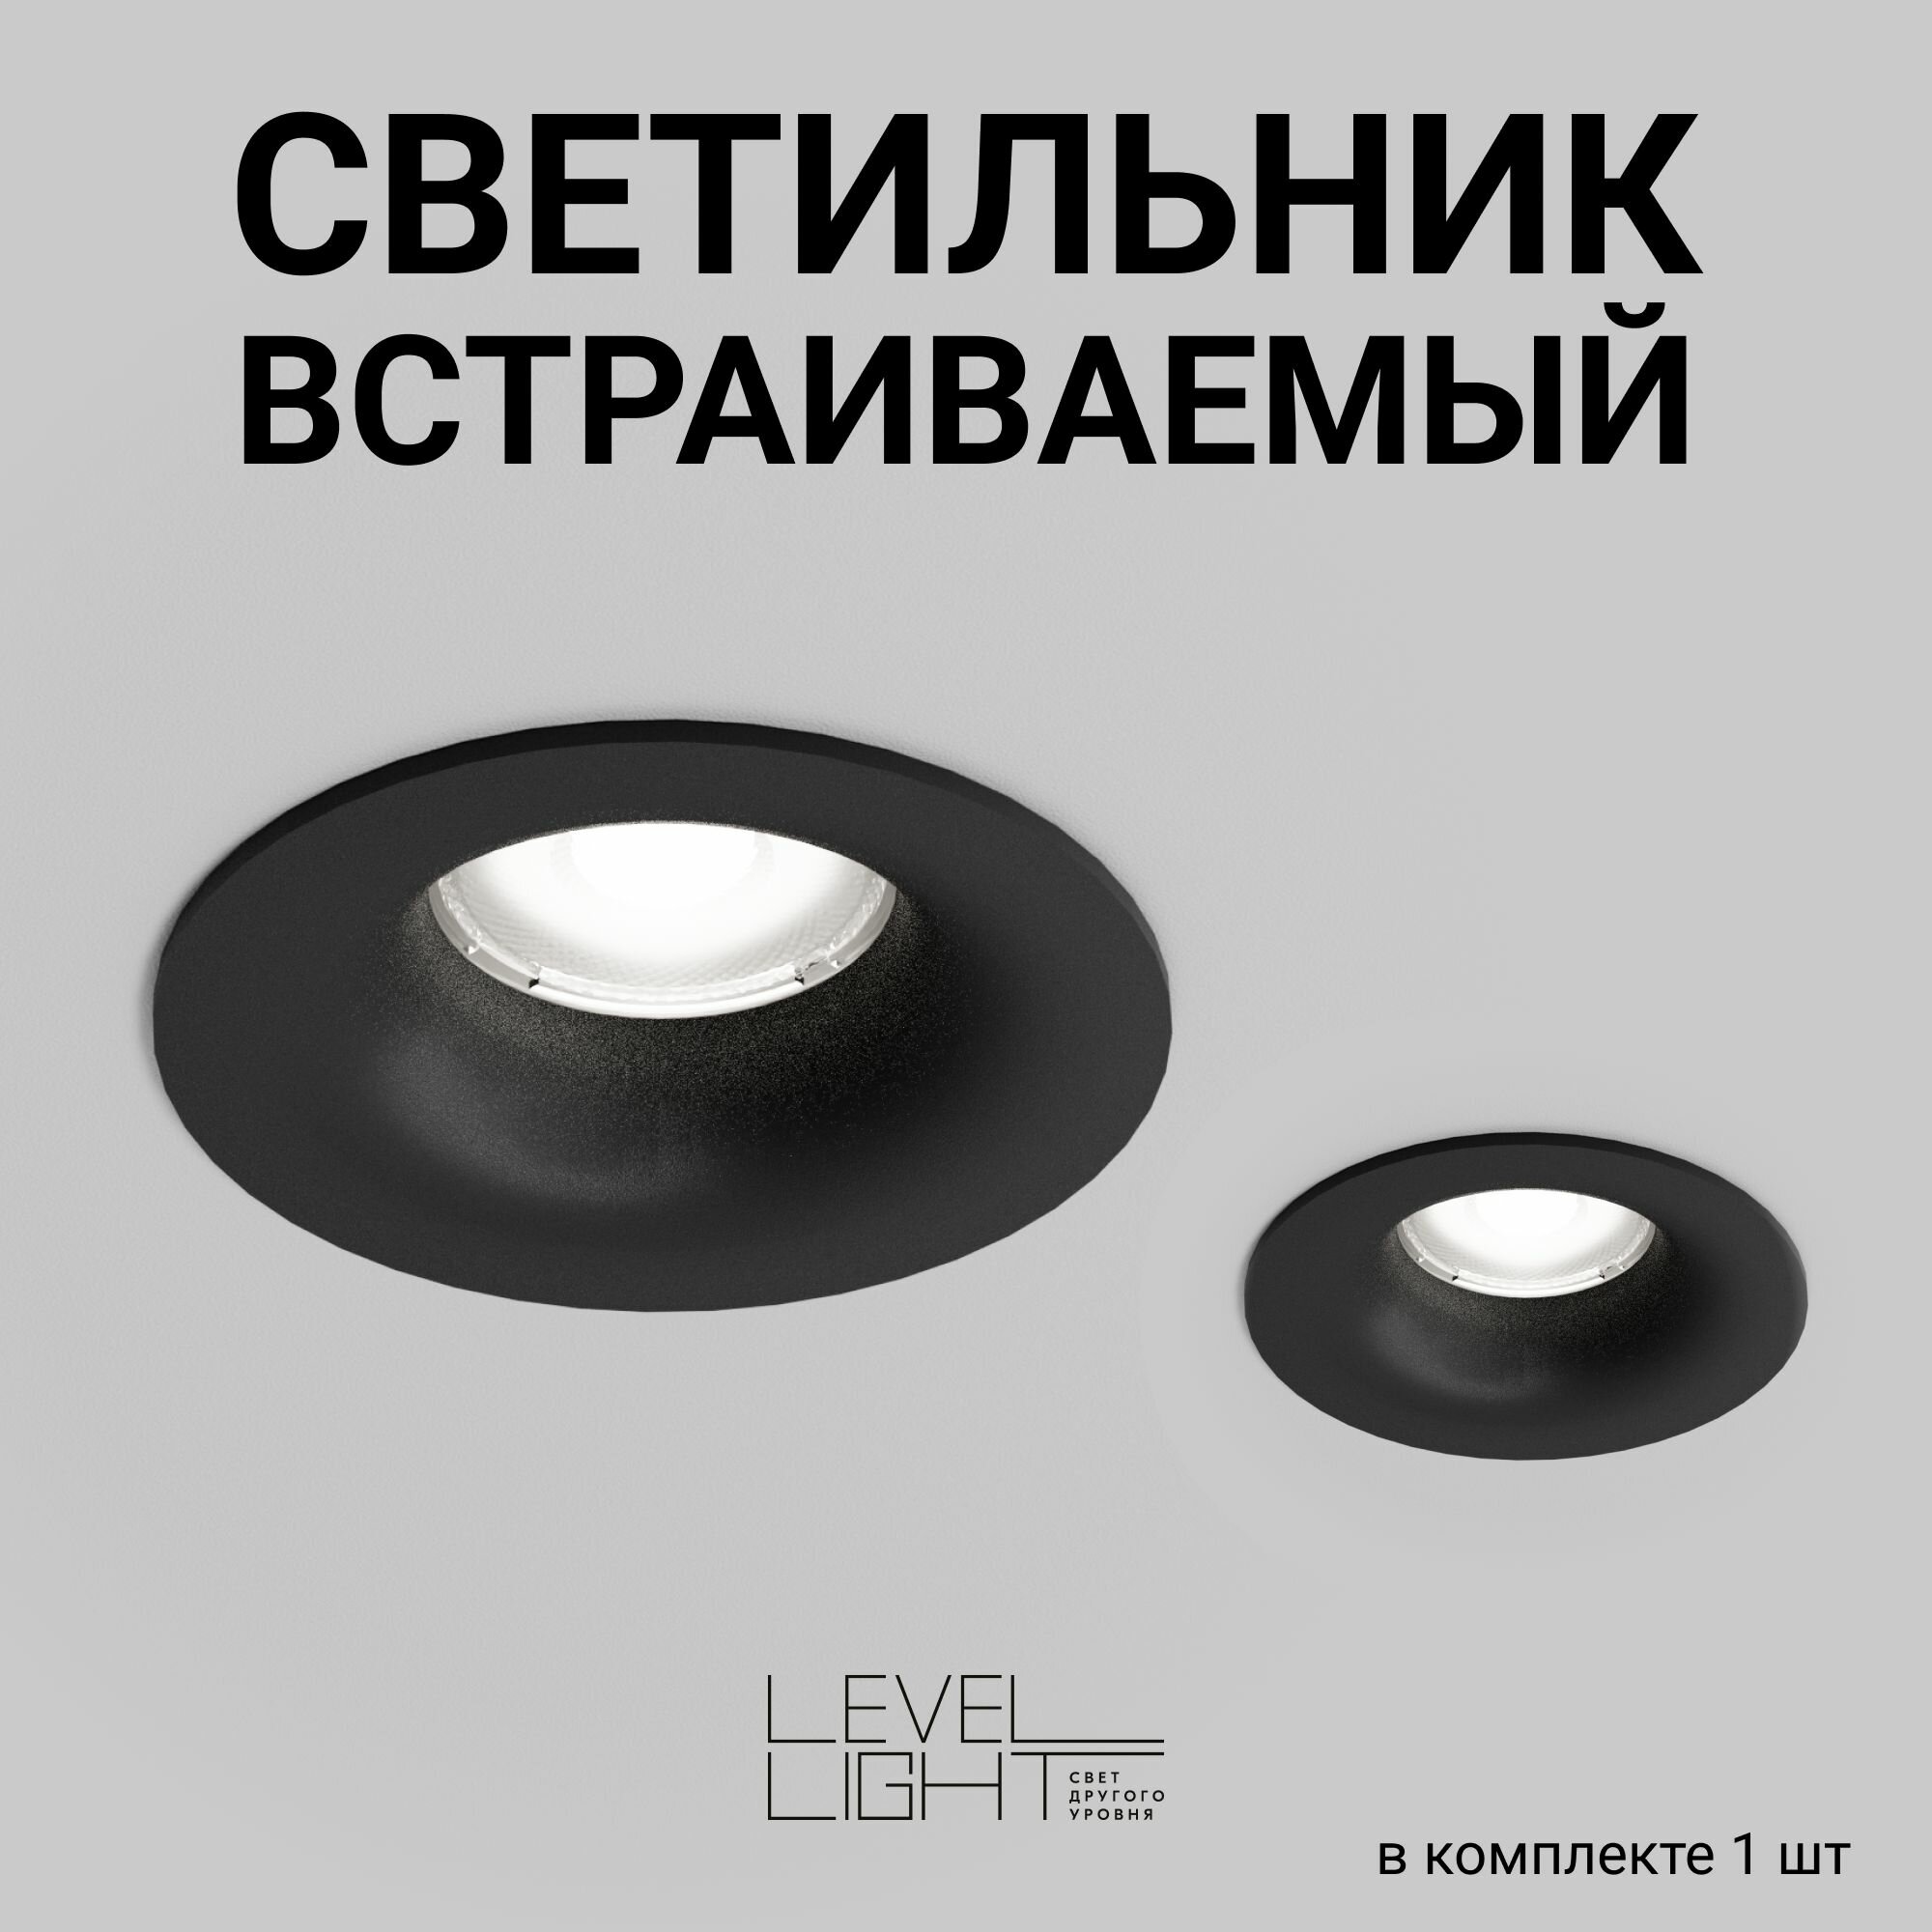 Встраиваемый точечный светильник, потолочный спотовый Level Light Vizzio BS-C2101RB, черный, круглый, из термопластика